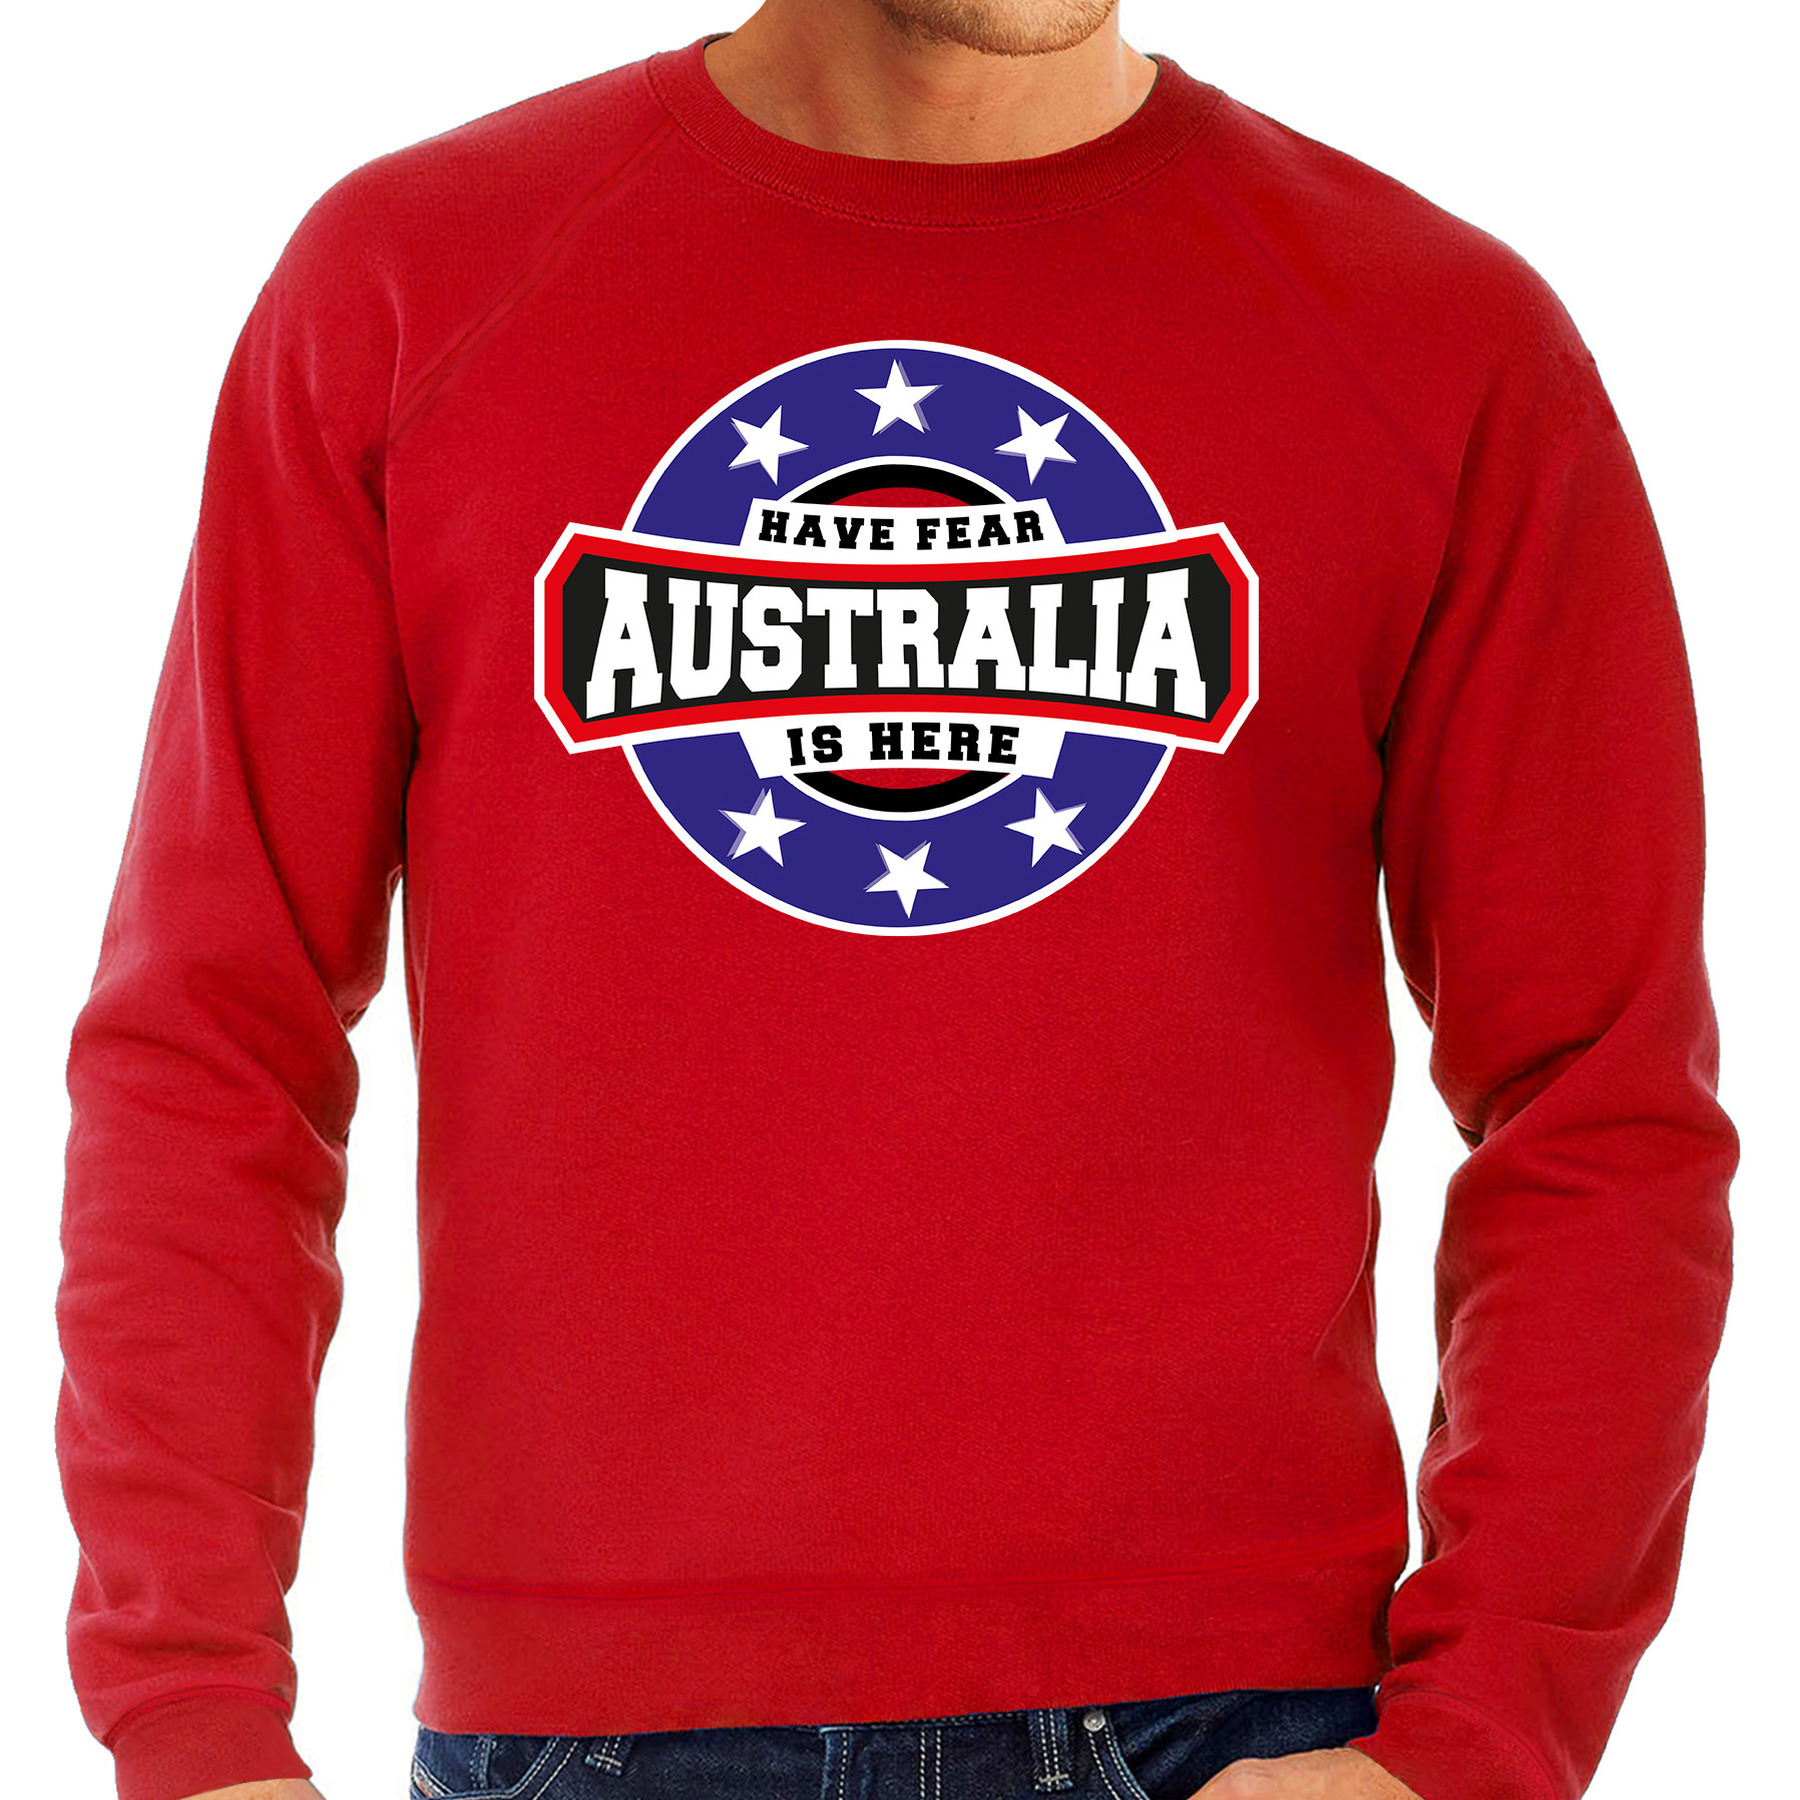 Have fear Australia-Australie is here supporter trui-kleding met sterren embleem rood voor heren